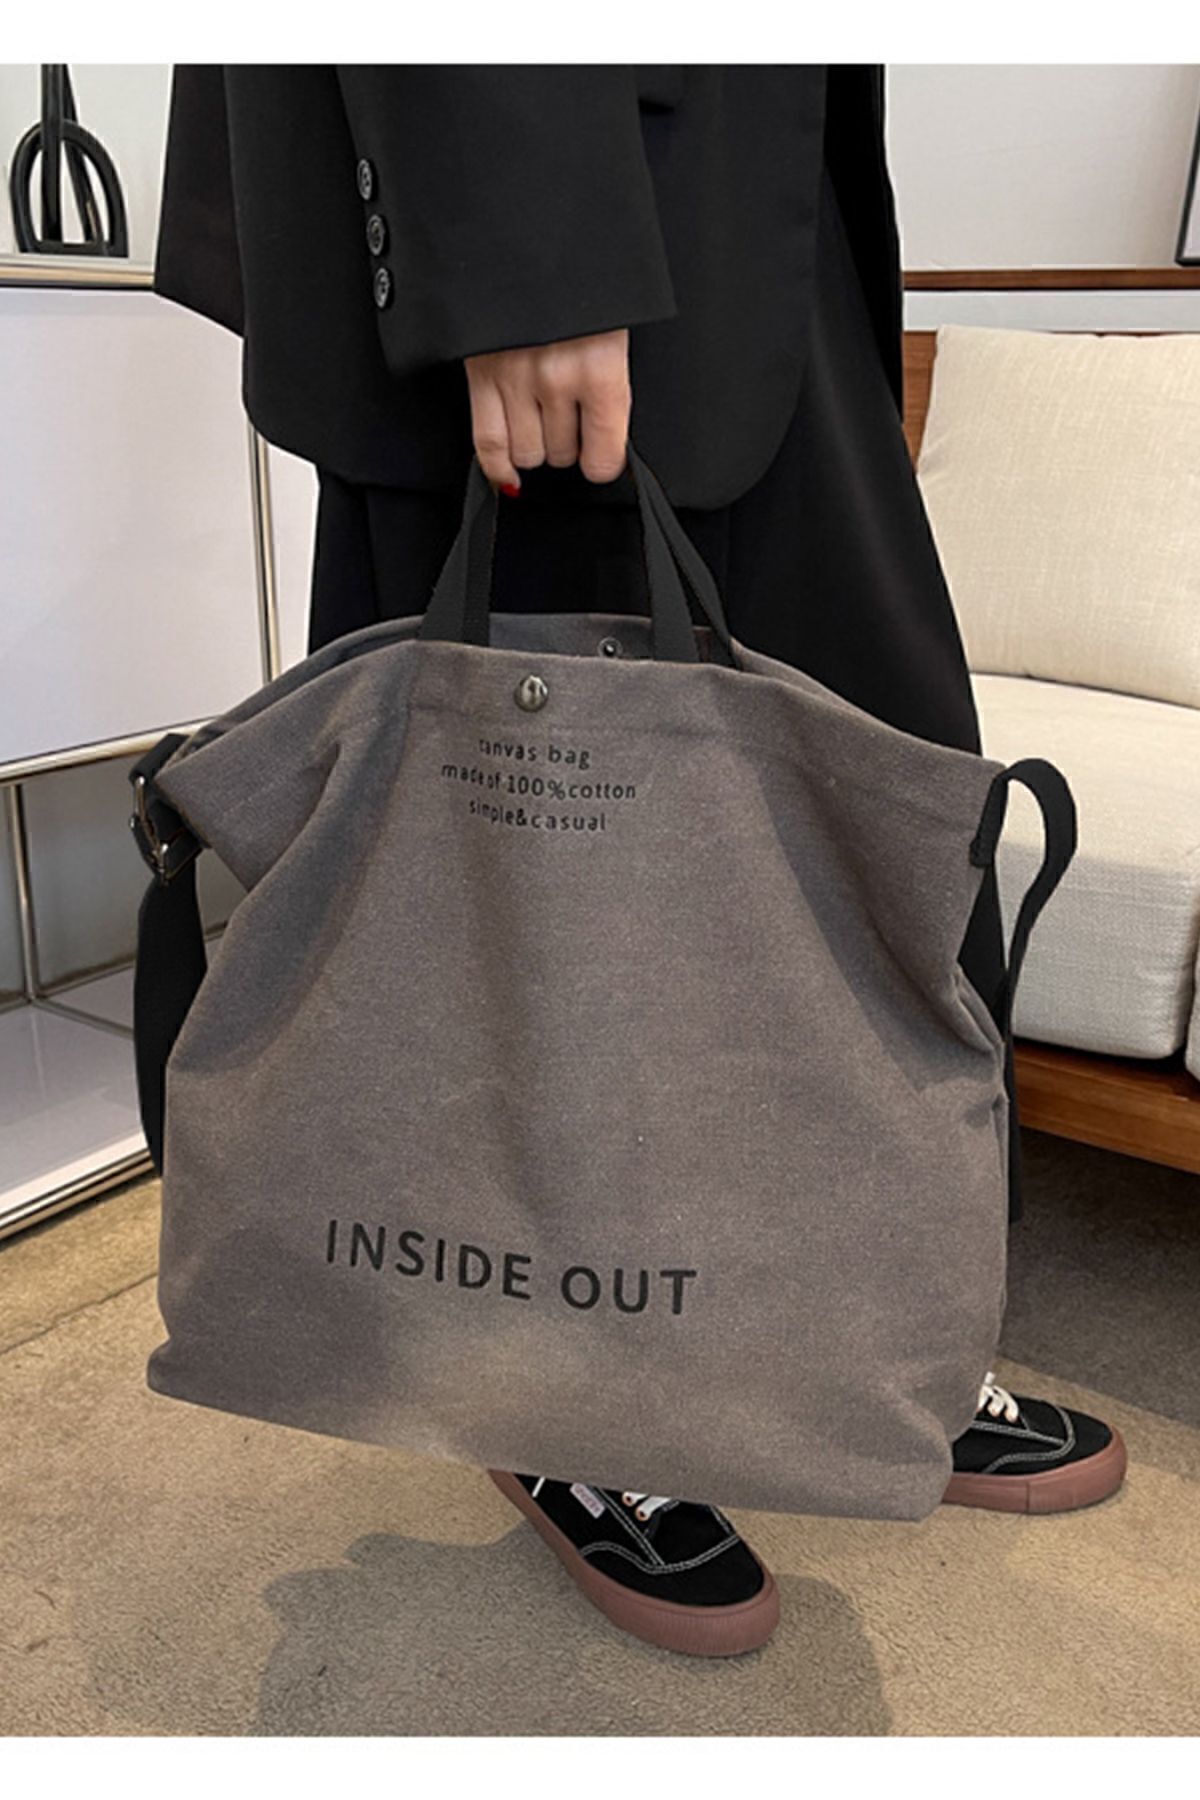 DE PLEIN Inside Out Kolay Kombin Kanvas Tote Gri Büyük Omuz Çantası Kadın Boz Çiyin Çantaları Tote Bag